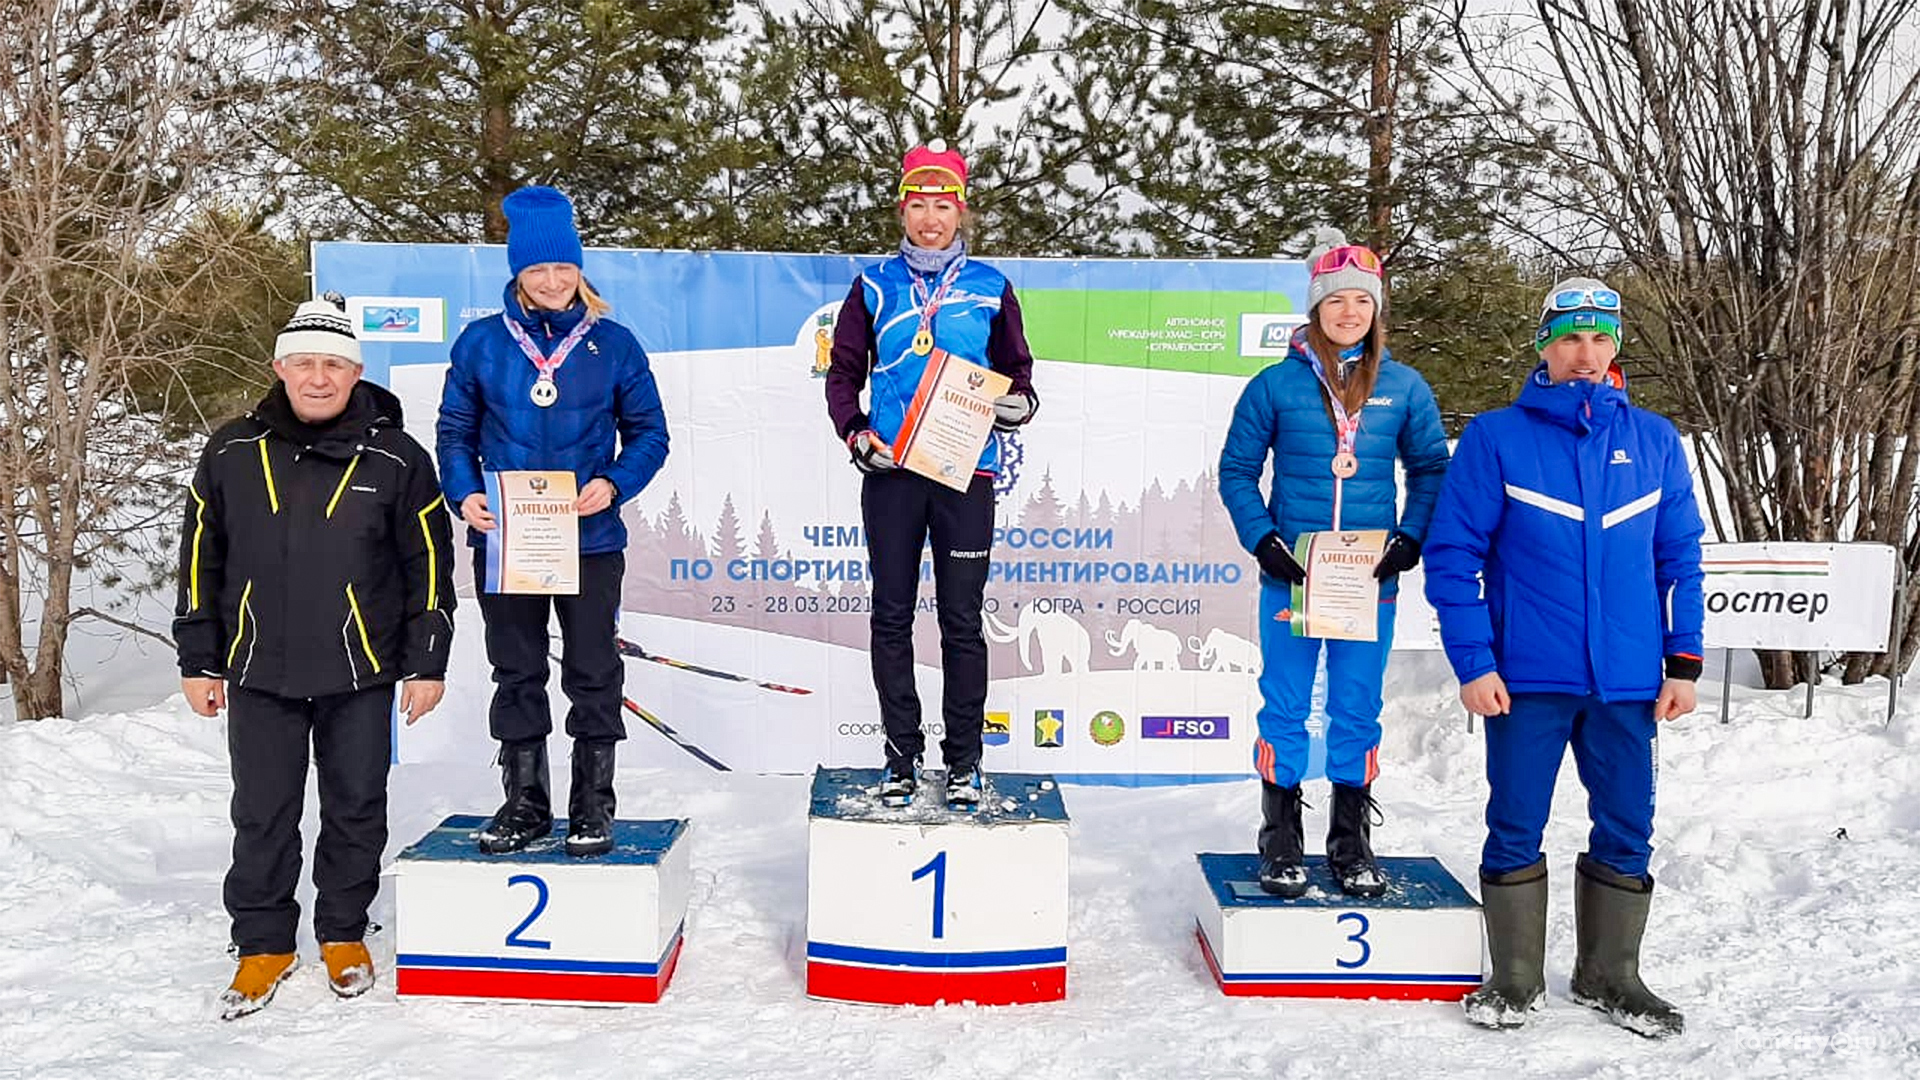 Комсомольчане стали триумфаторами чемпионата России по спортивному ориентированию на лыжах